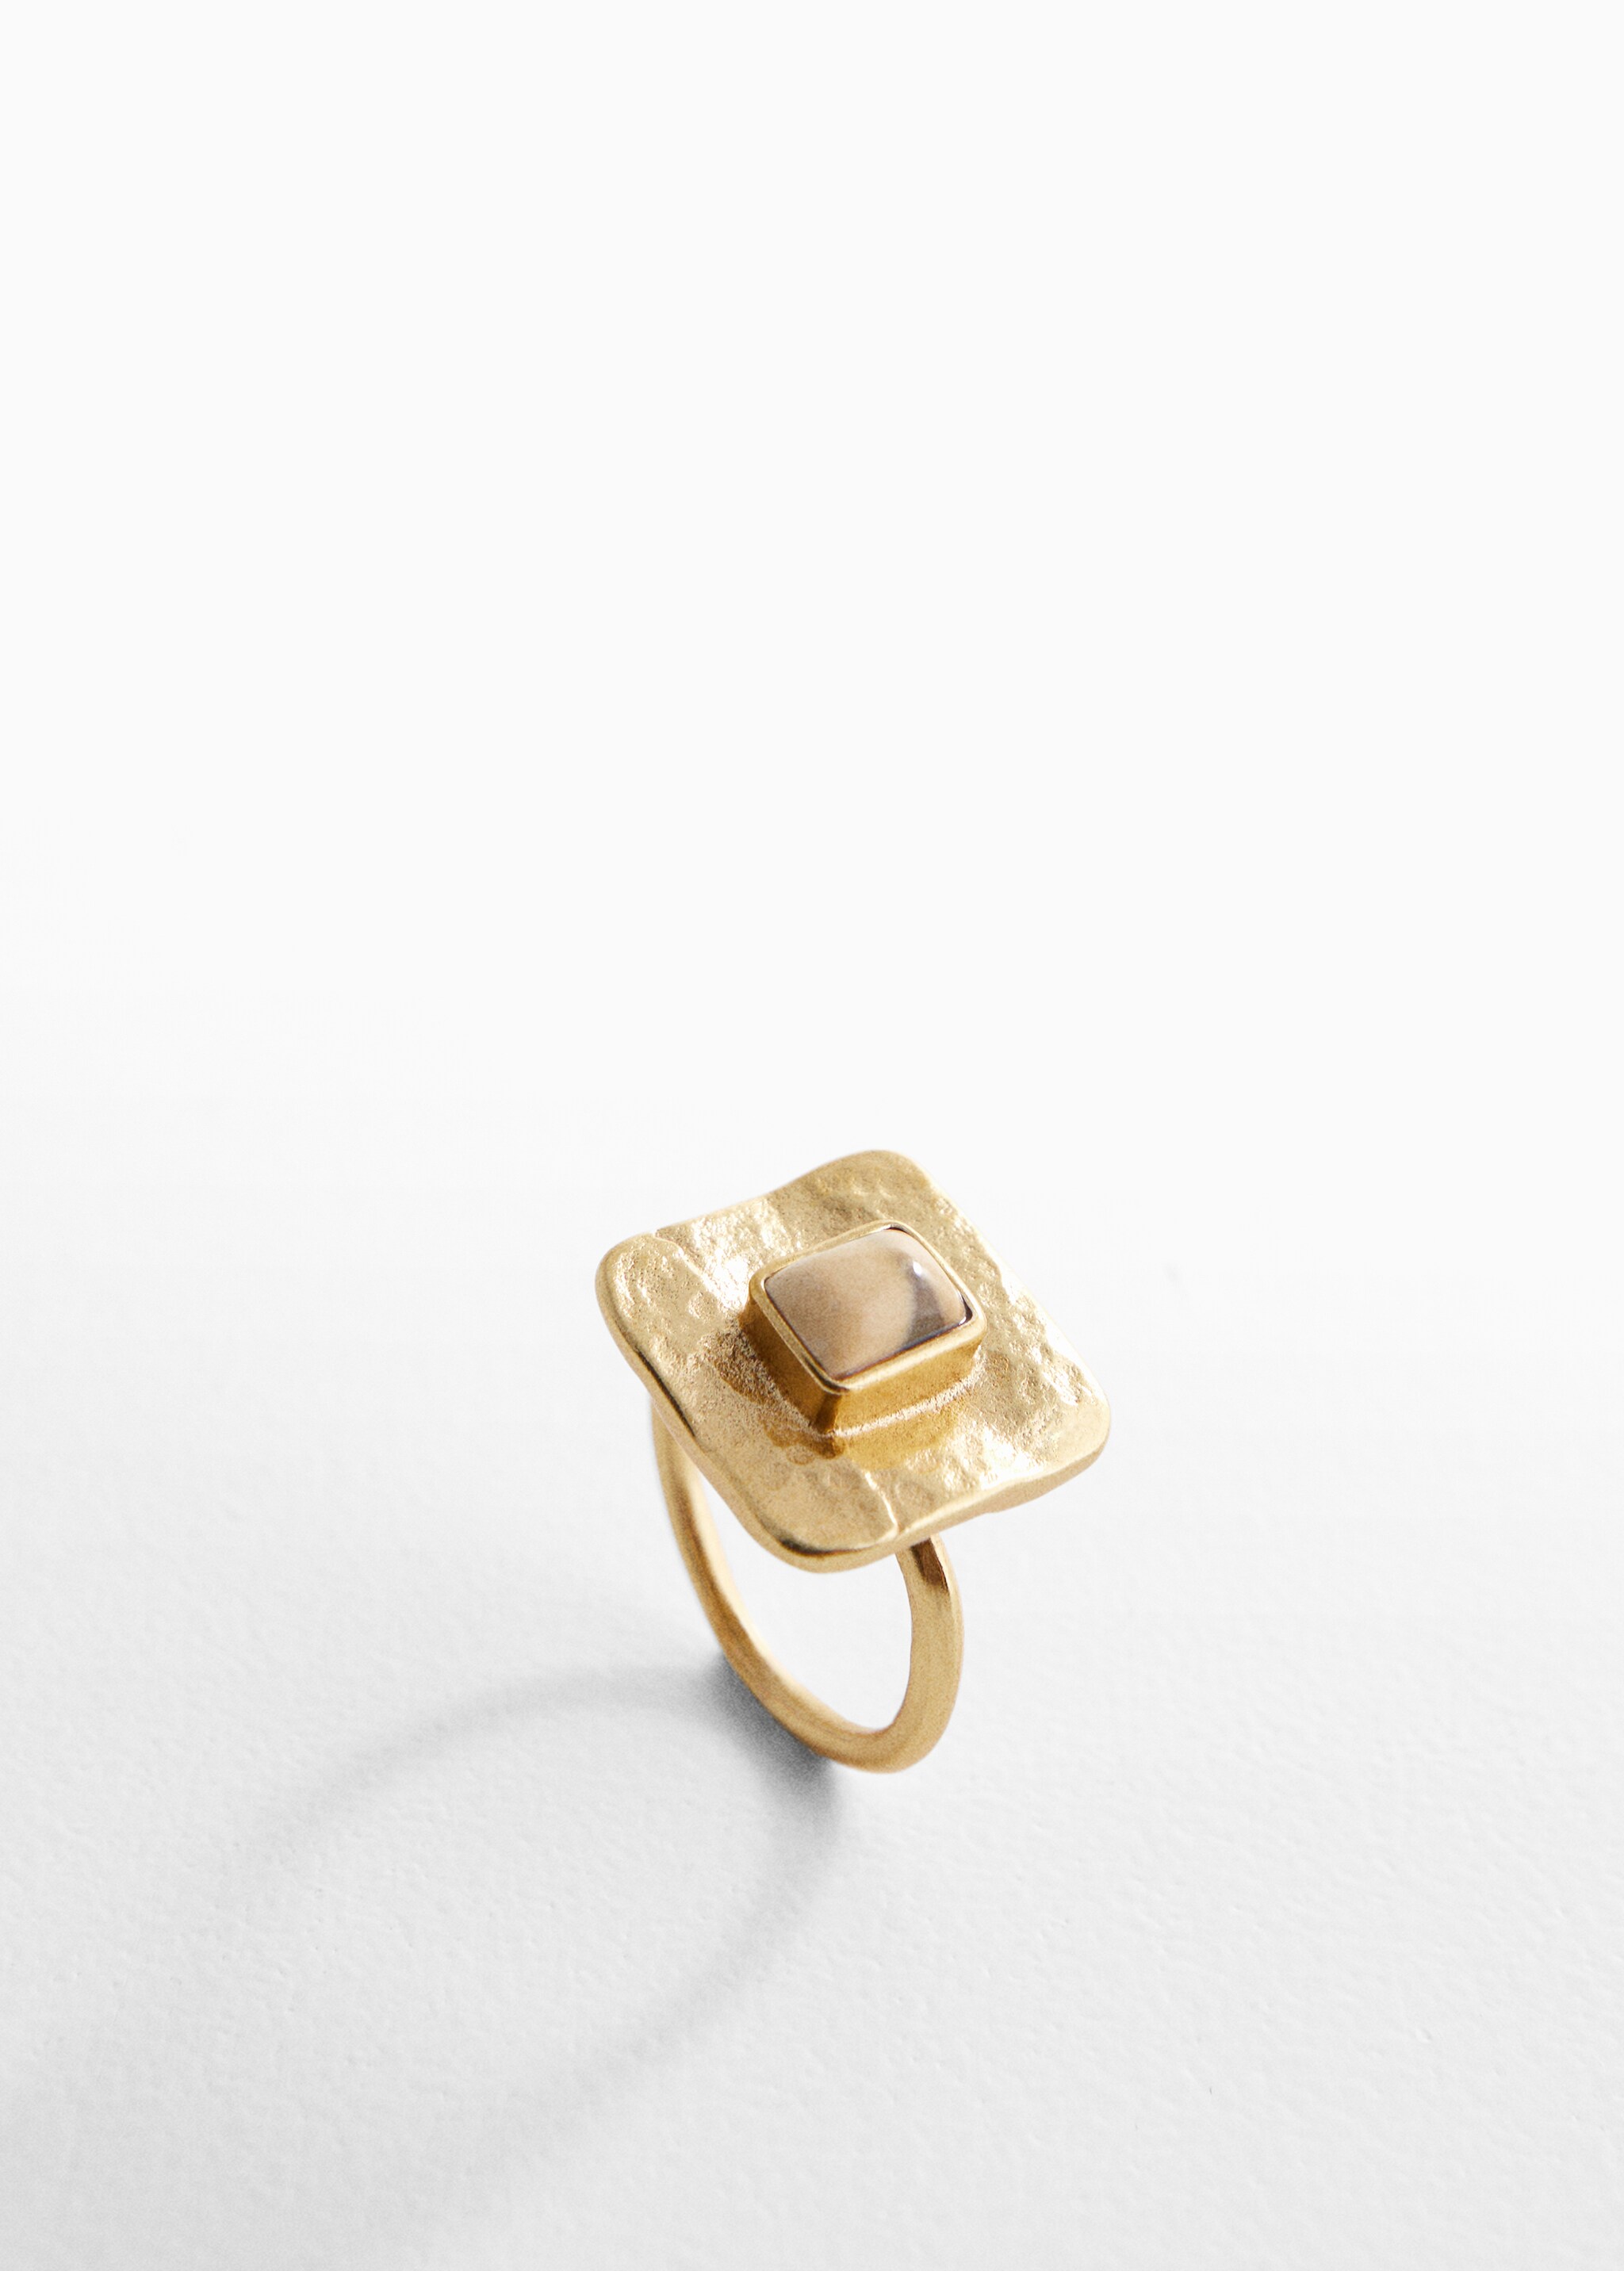 Ring mit viereckigem Design - Mittlere Ansicht